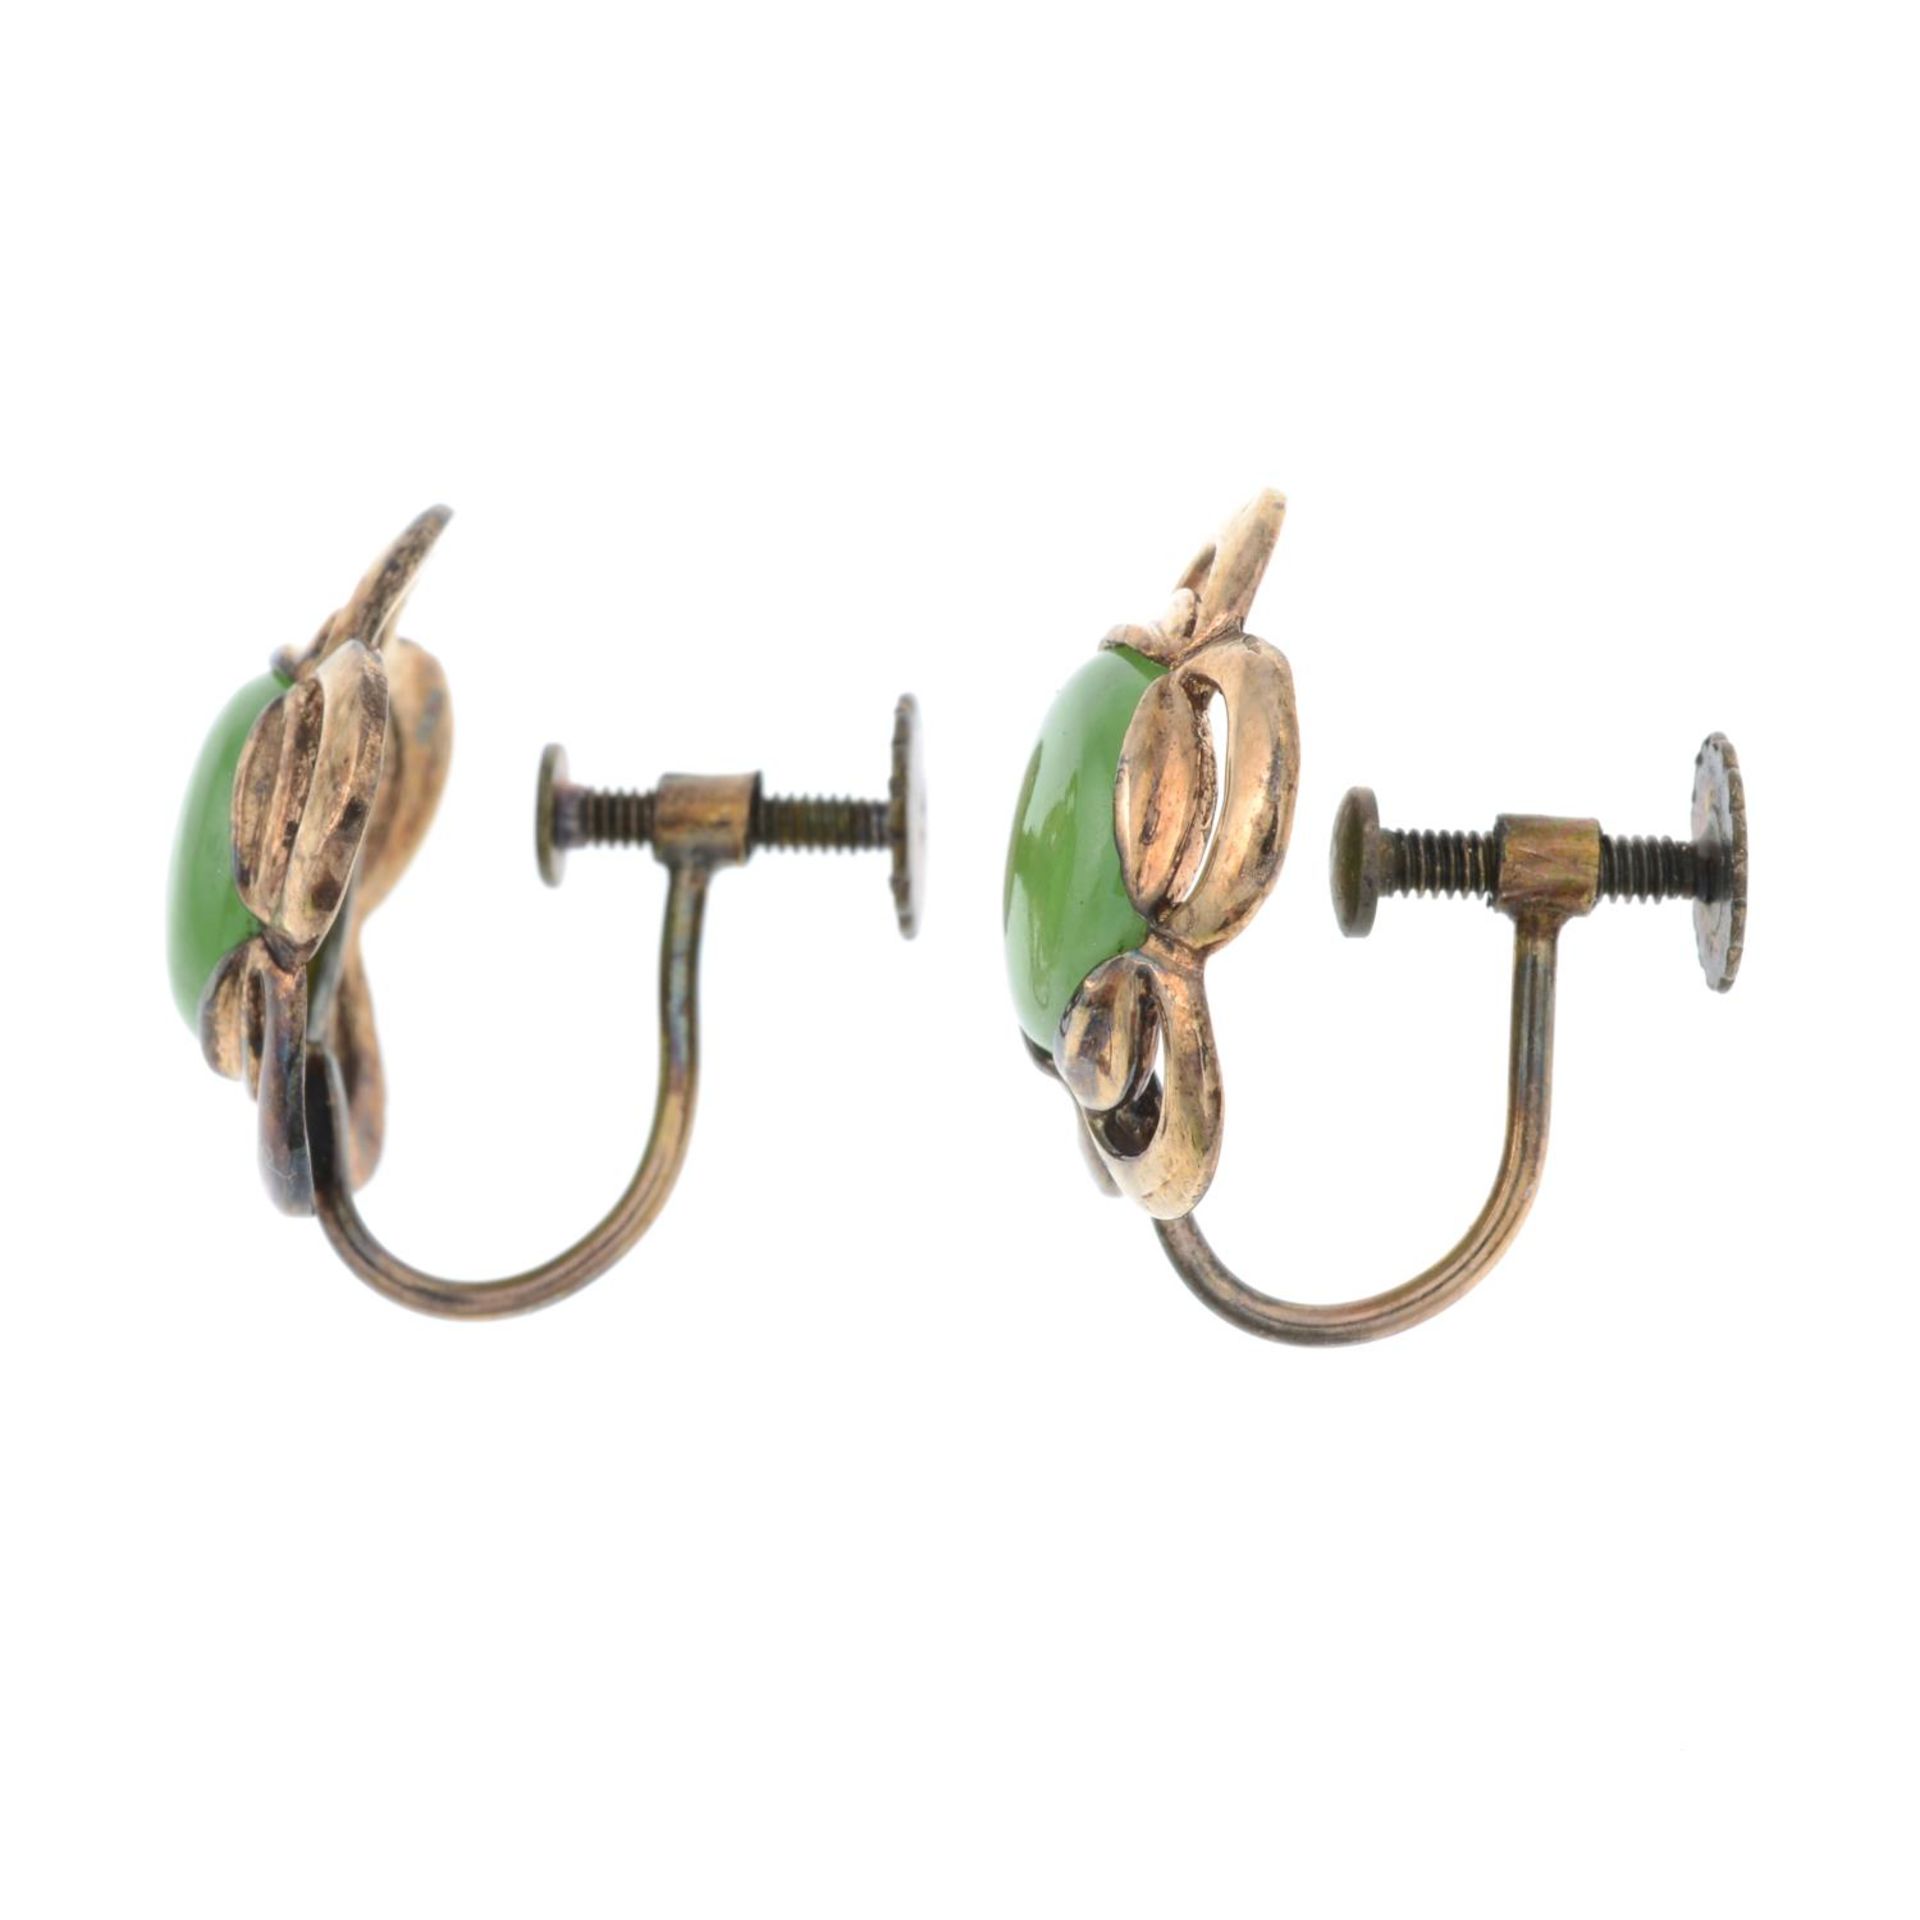 A jade brooch and a pair of jade earrings. - Image 3 of 5